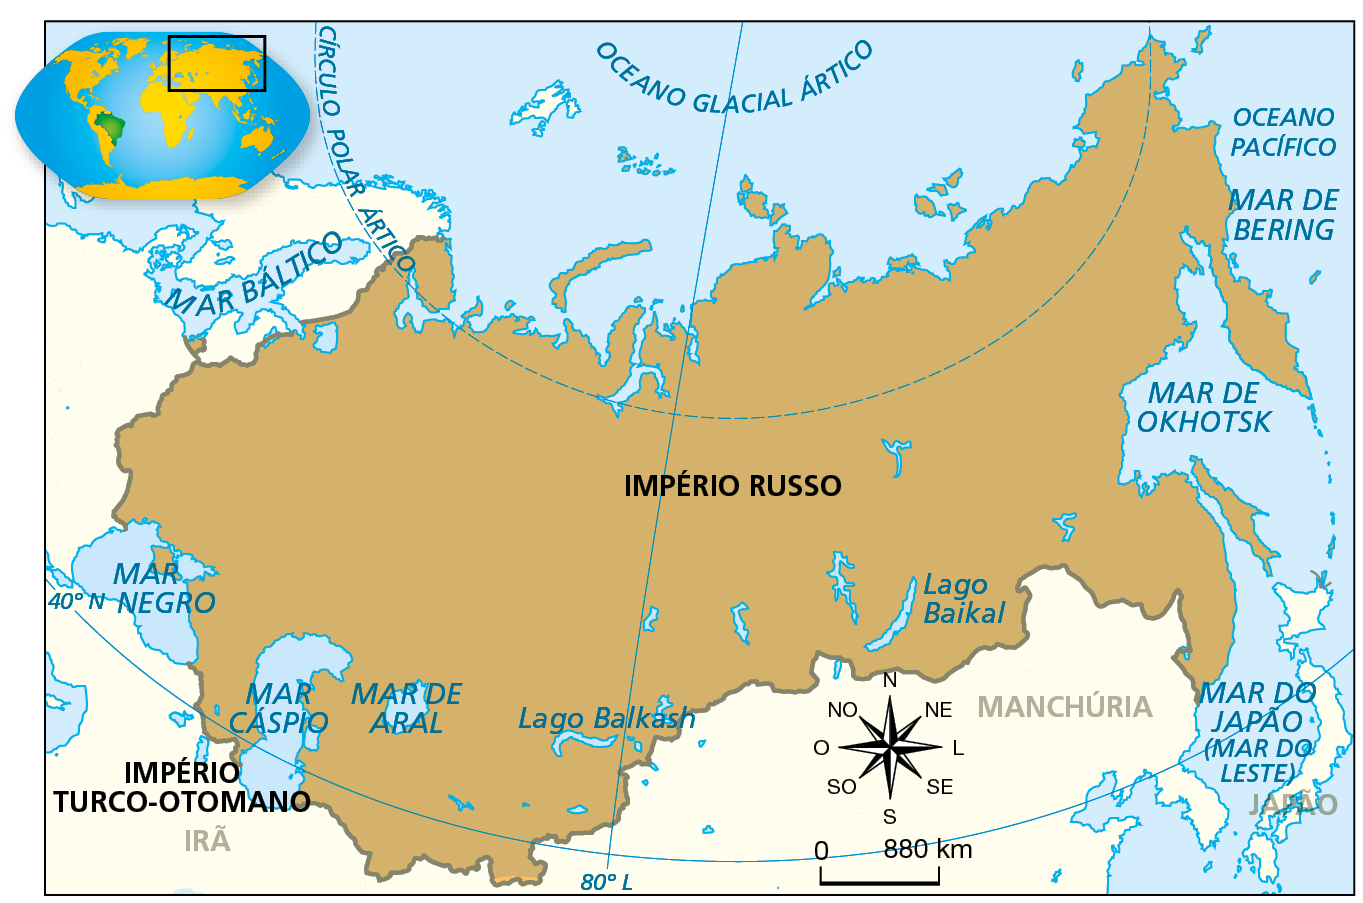 Mapa. Extensão máxima do Império Russo (1900). Porção norte dos continentes europeu e asiático. Destacado na cor laranja, o território do Império Russo, que se estende do Mar Báltico, a oeste, aos mares do Leste, Okhotsk, Bering e Oceano Pacífico a leste. Ao norte, o território alcança o Oceano Glacial Ártico e se estende até os mares Negro, Cáspio e de Aral, ao Sul. Na parte inferior, rosa dos ventos e escala de 0 a 880 quilômetros.